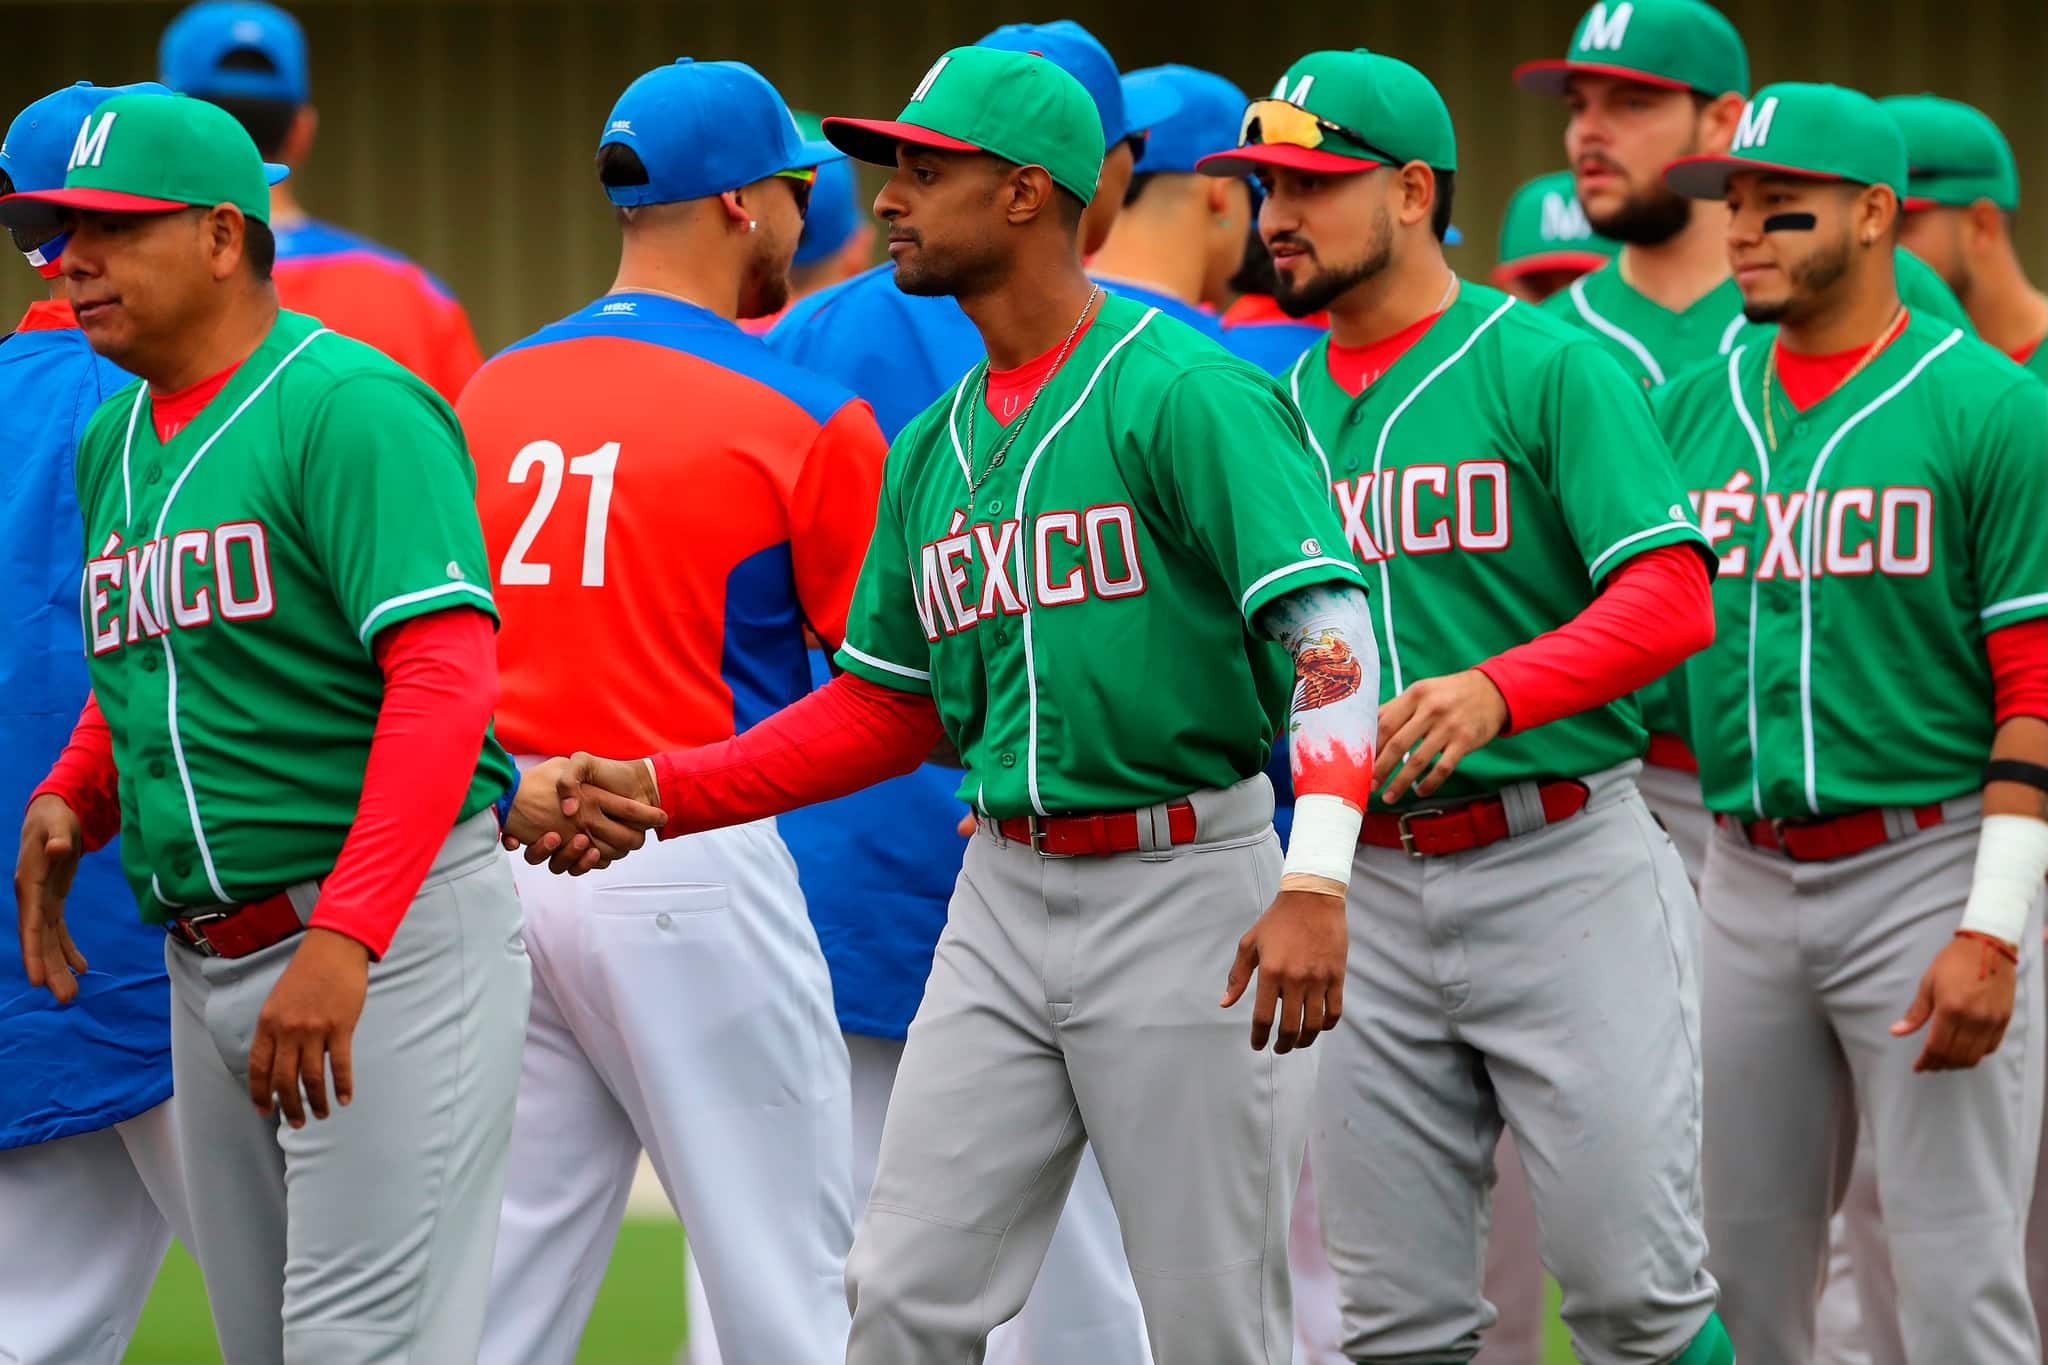 México saludando a los jugadores de Chile